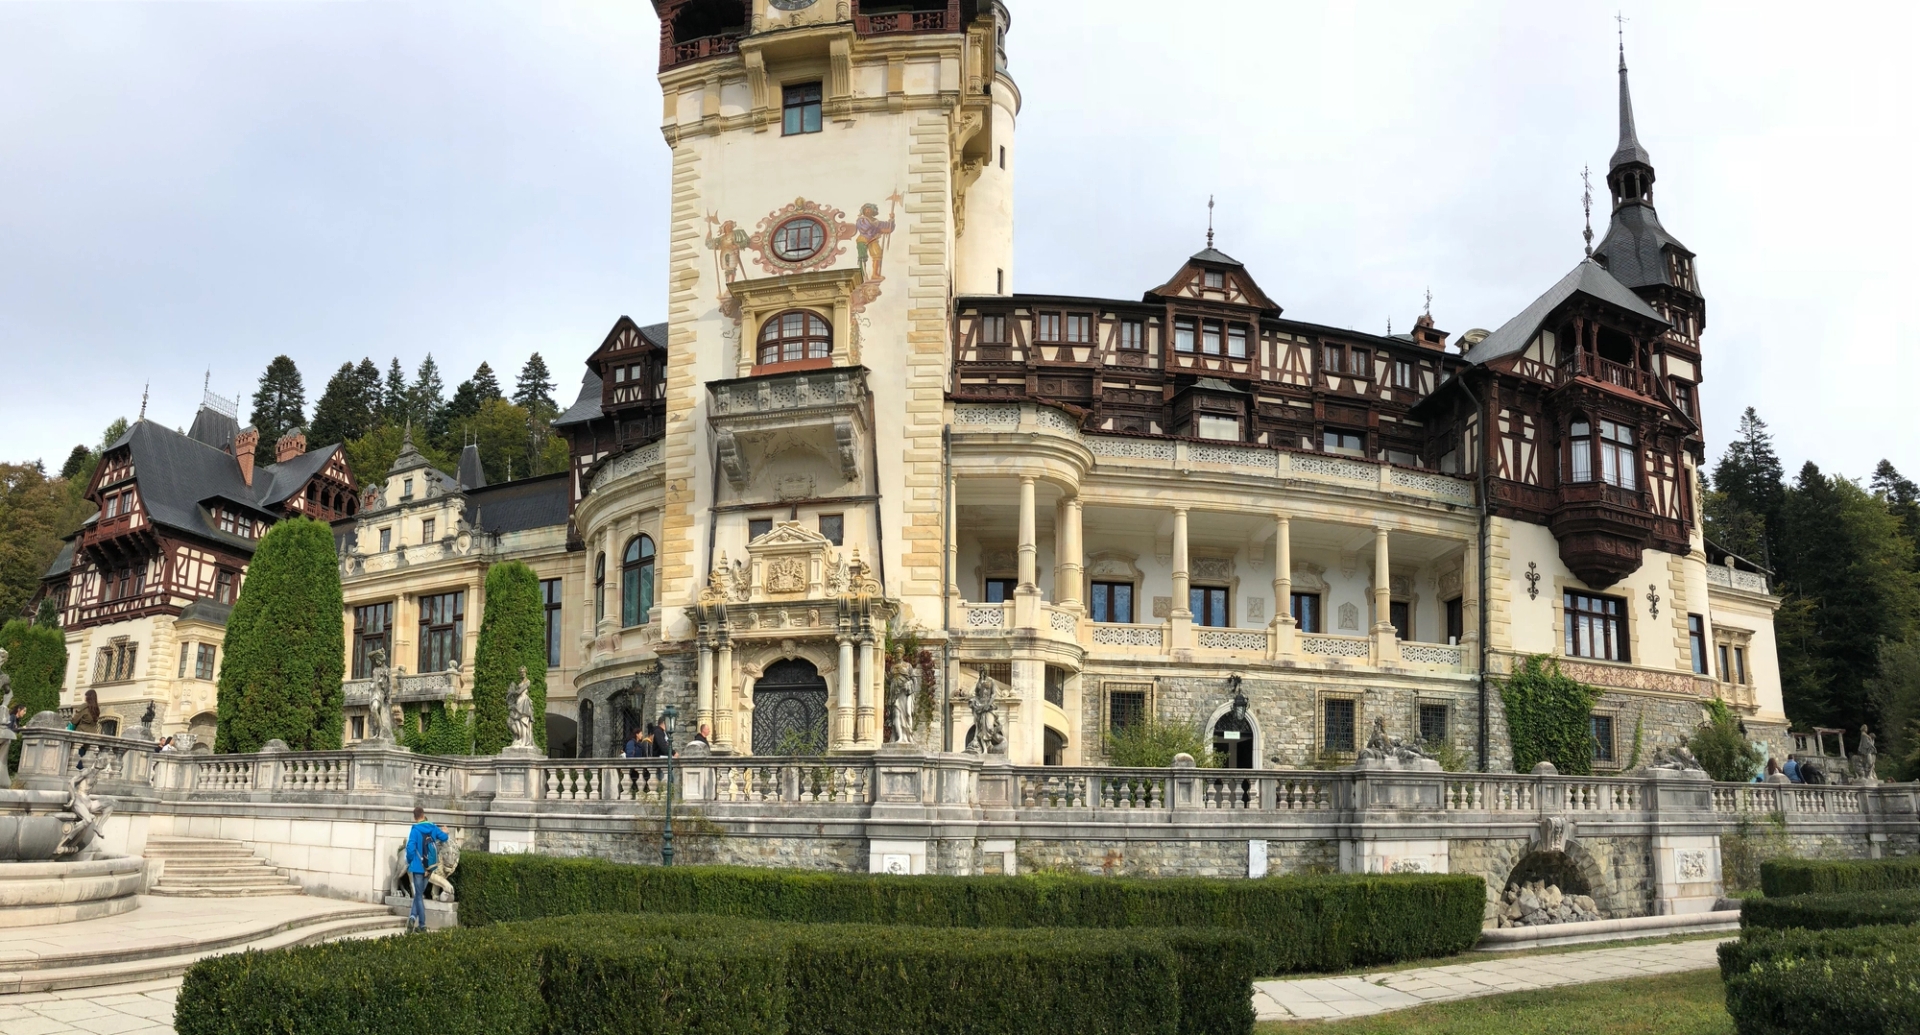 Castelul Peles is a Neo-Renaissance castle in the Carpathian Mountains